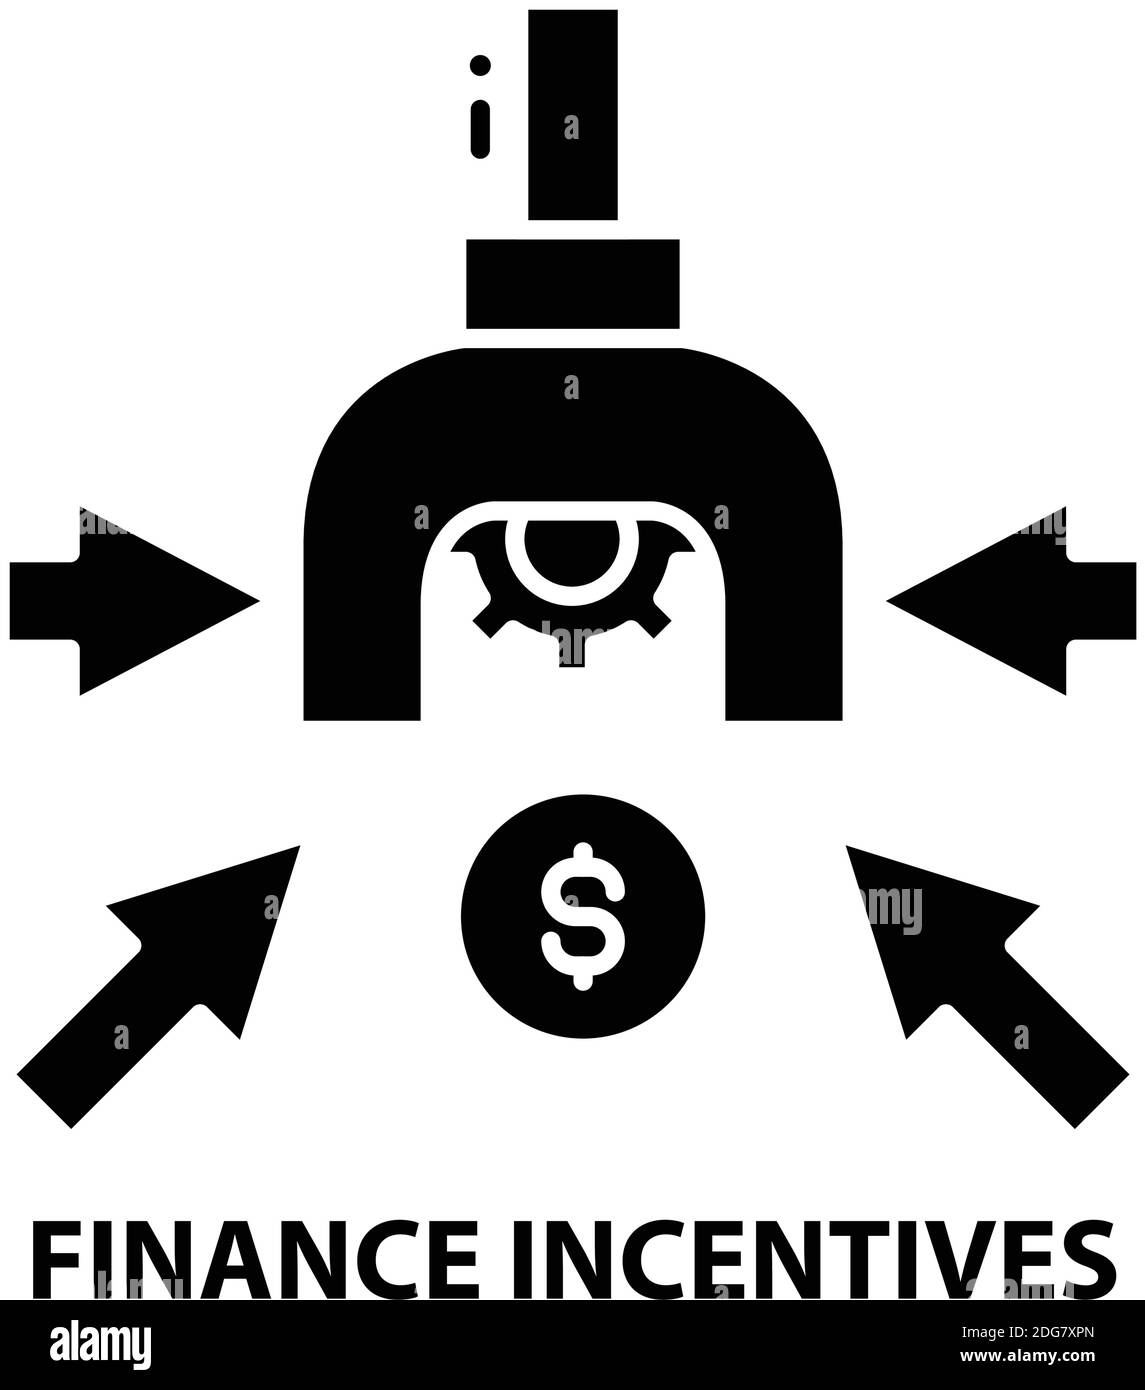 icona incentivi finanziari, segno vettoriale nero con tratti modificabili, illustrazione del concetto Illustrazione Vettoriale